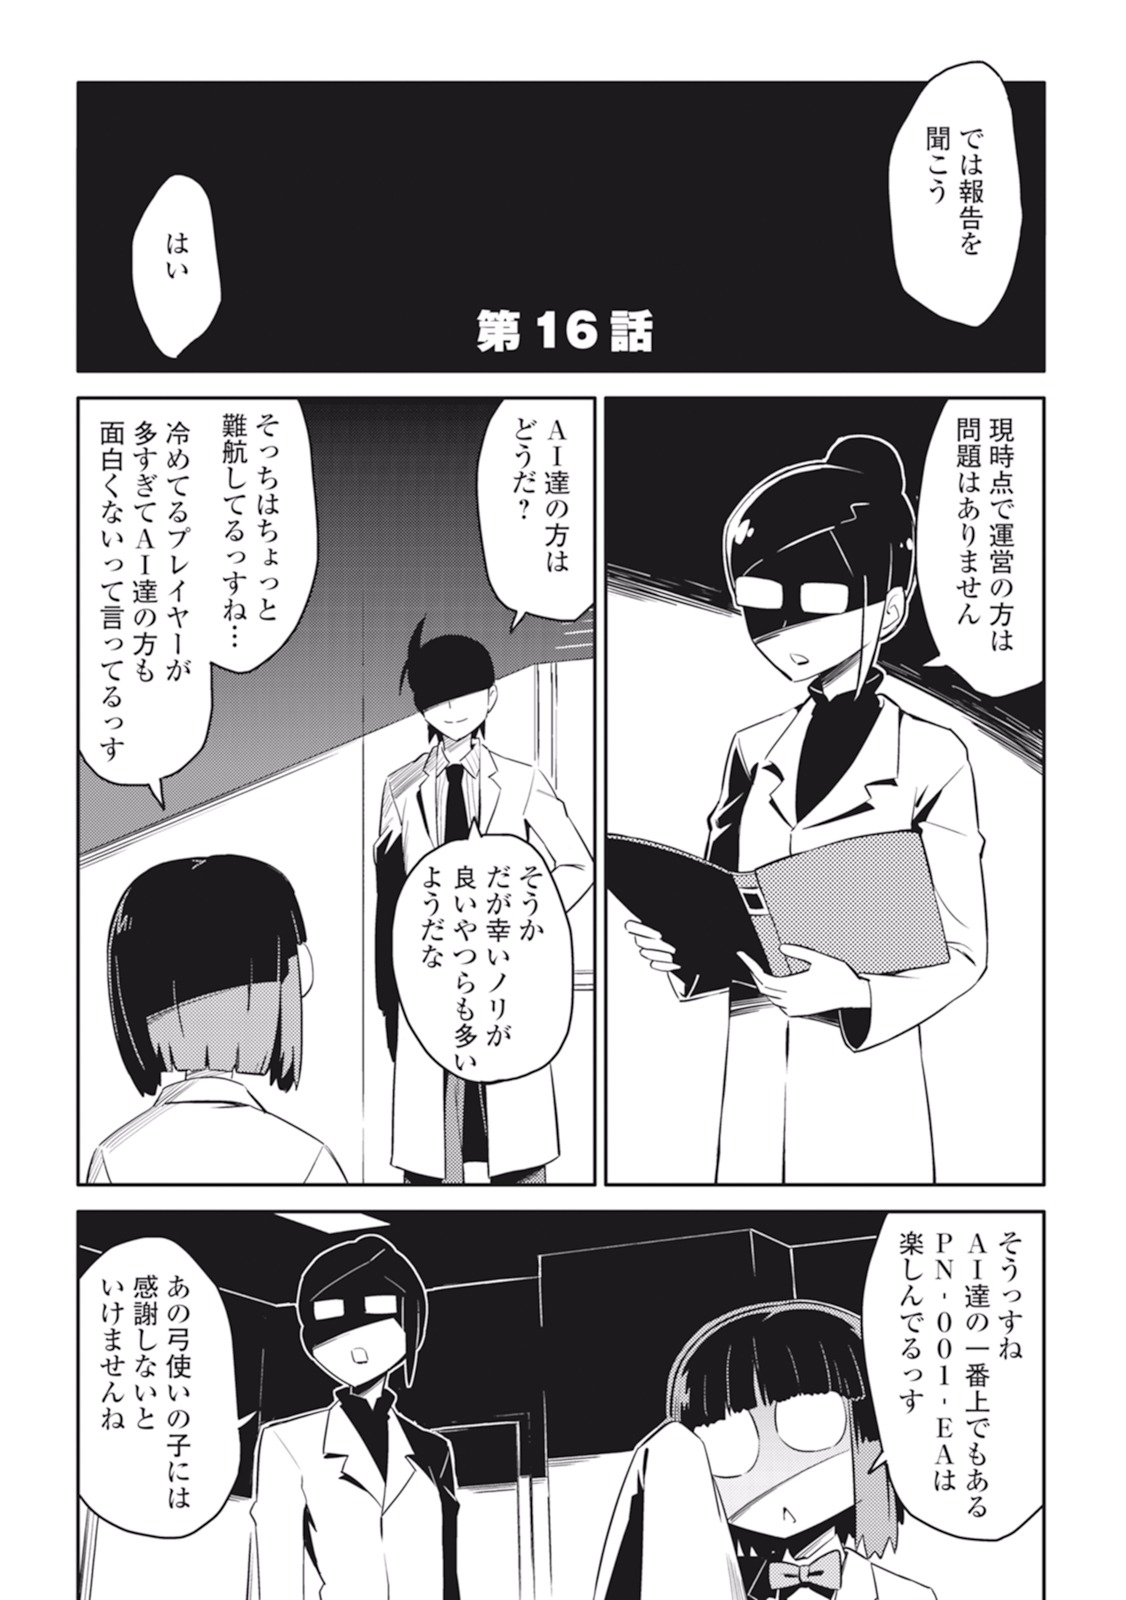 Toaru Ossan no VRMMO Katsudouki - Chapter 16 - Page 1